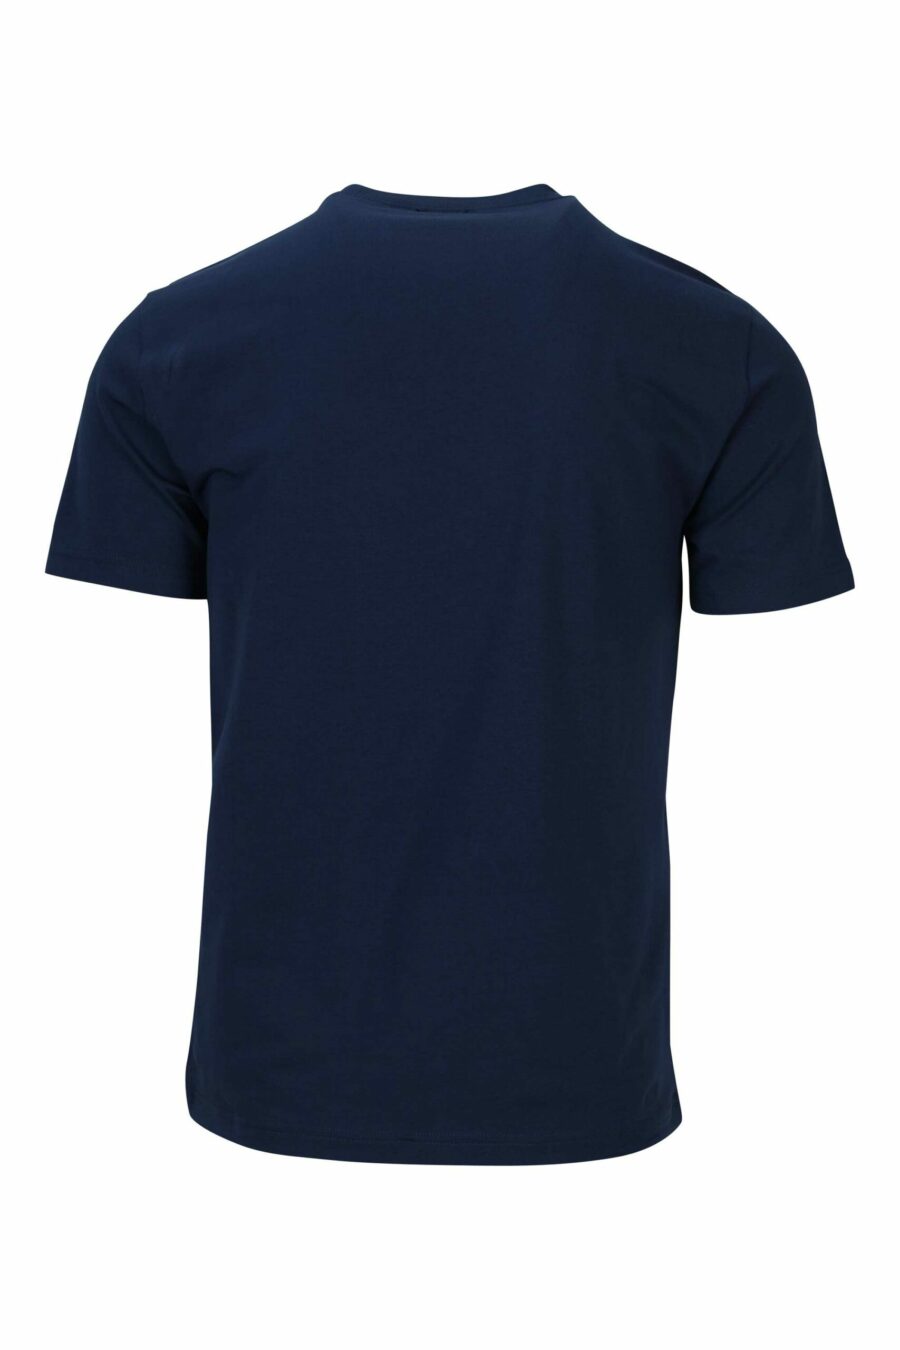 Dunkelblaues T-Shirt mit neonorangem "lux identity" Maxilogo - 8058947491445 1 skaliert